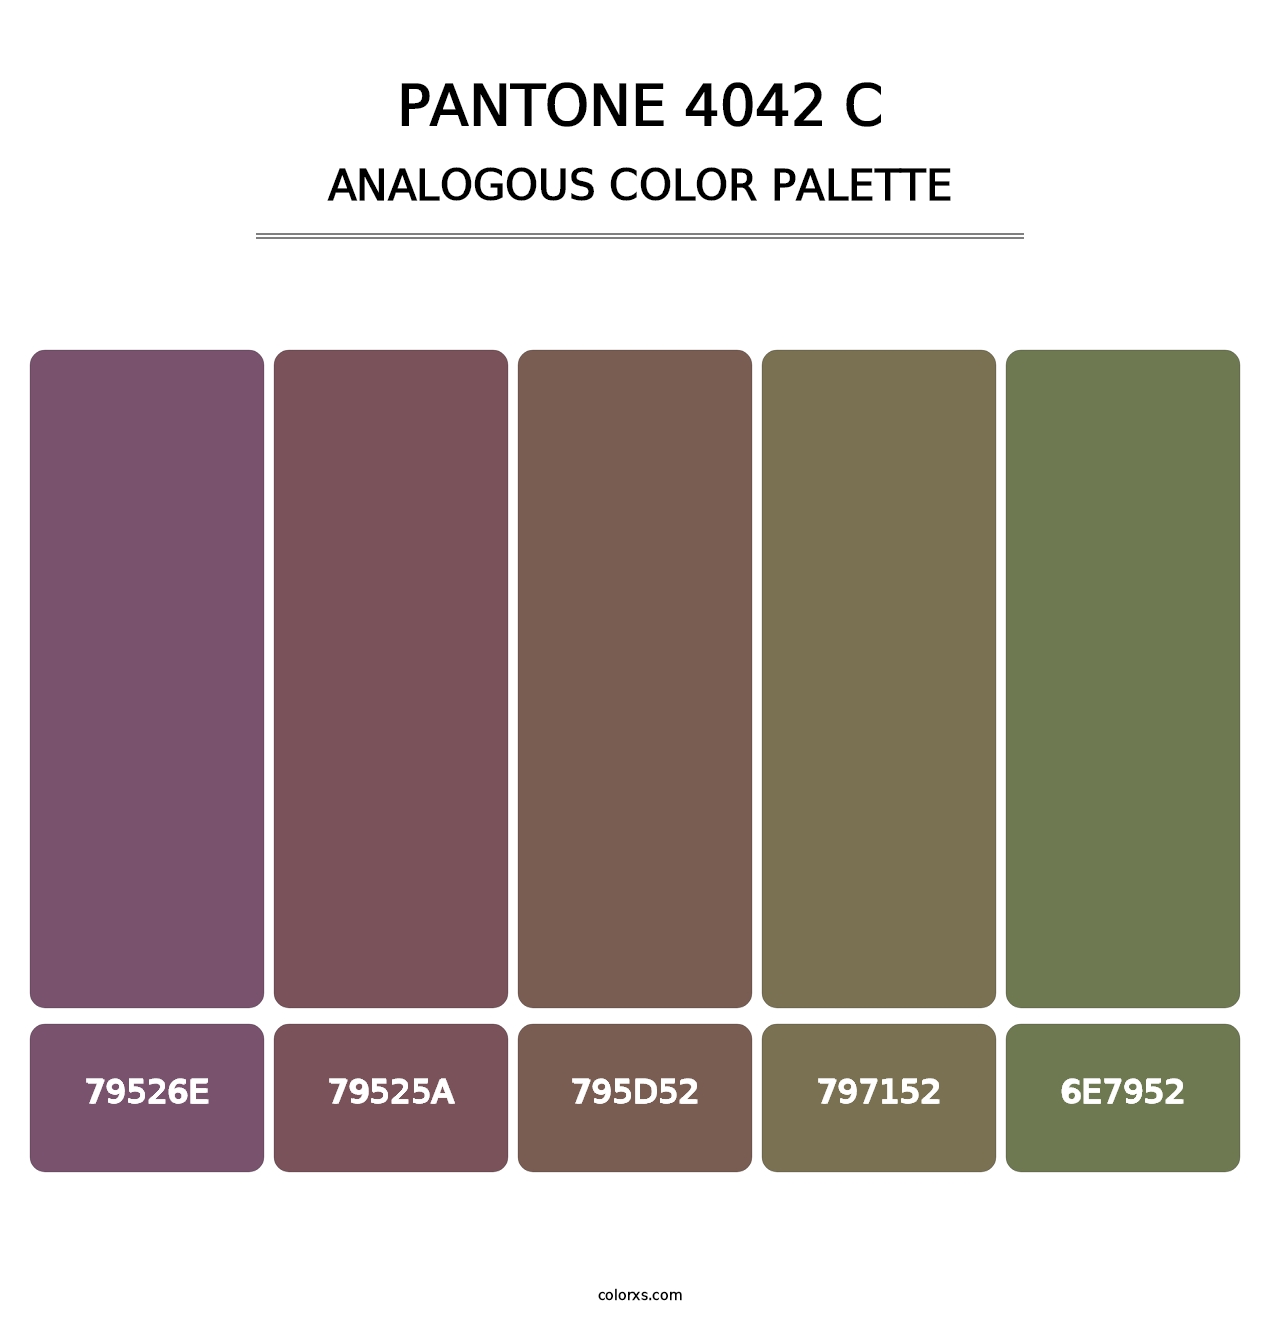 PANTONE 4042 C - Analogous Color Palette